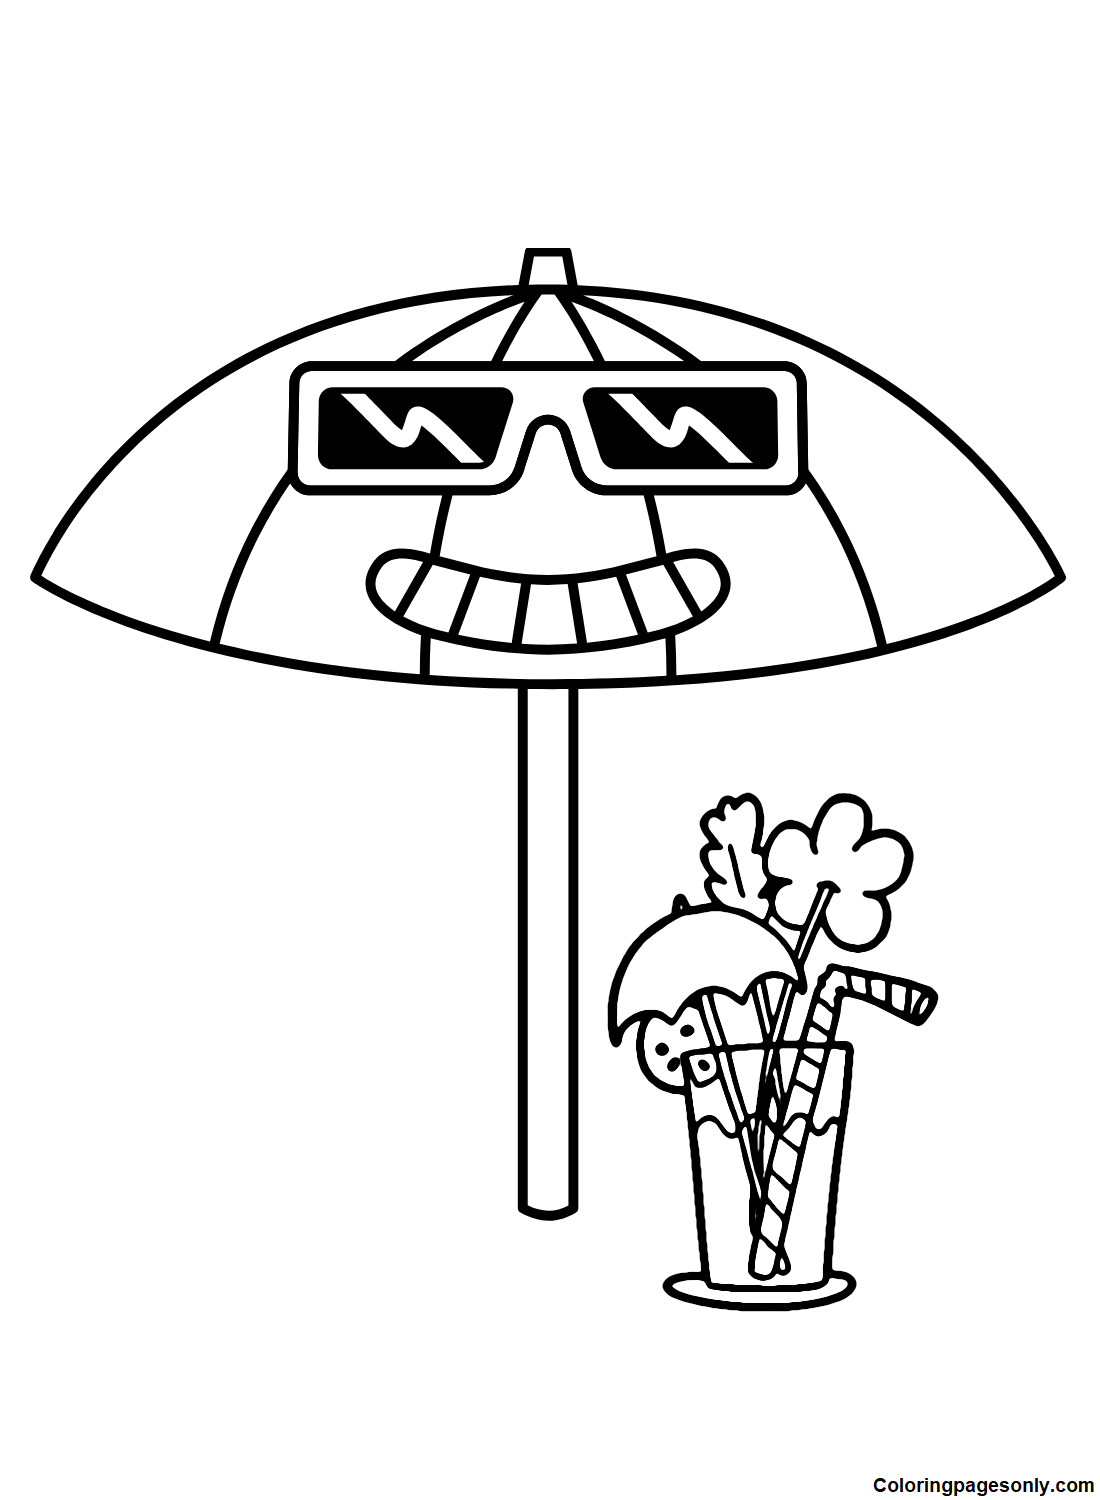 Забавный зонтик от Umbrella